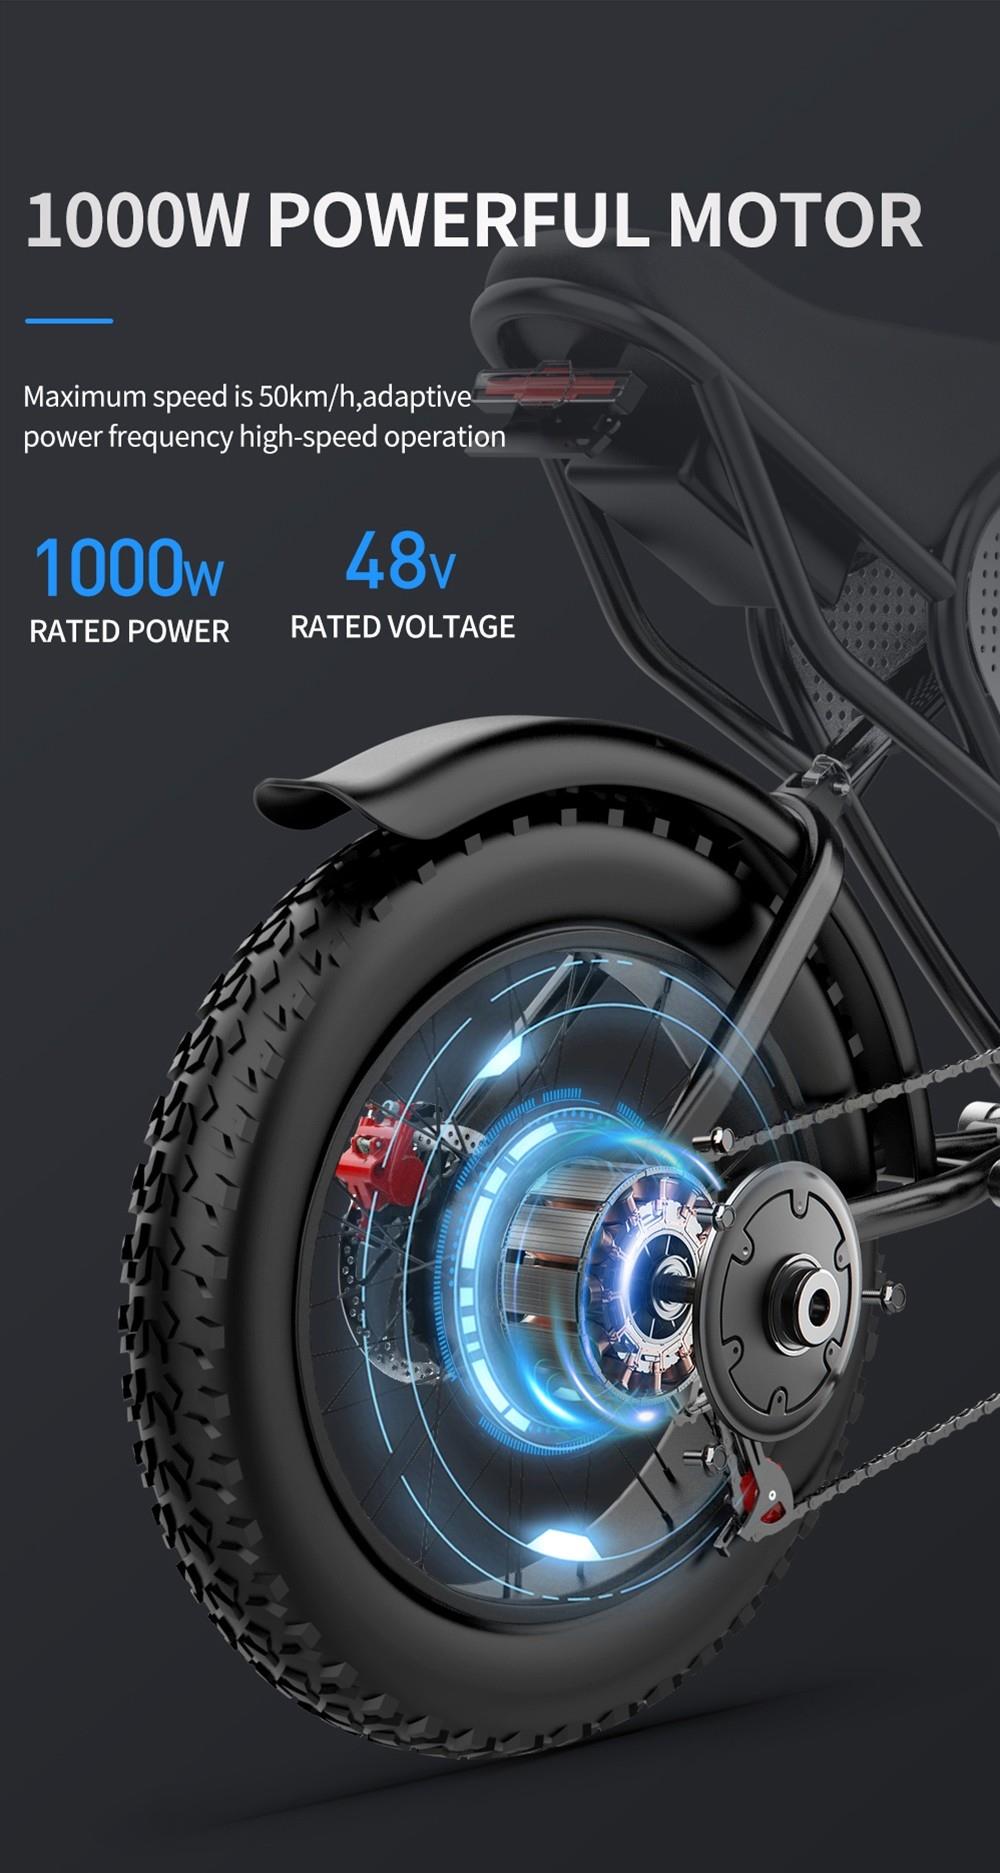 Vélo électrique tout-terrain tout-terrain Ridstar Q20 avec moteur puissant de 1000 W, tension nominale de 48 V